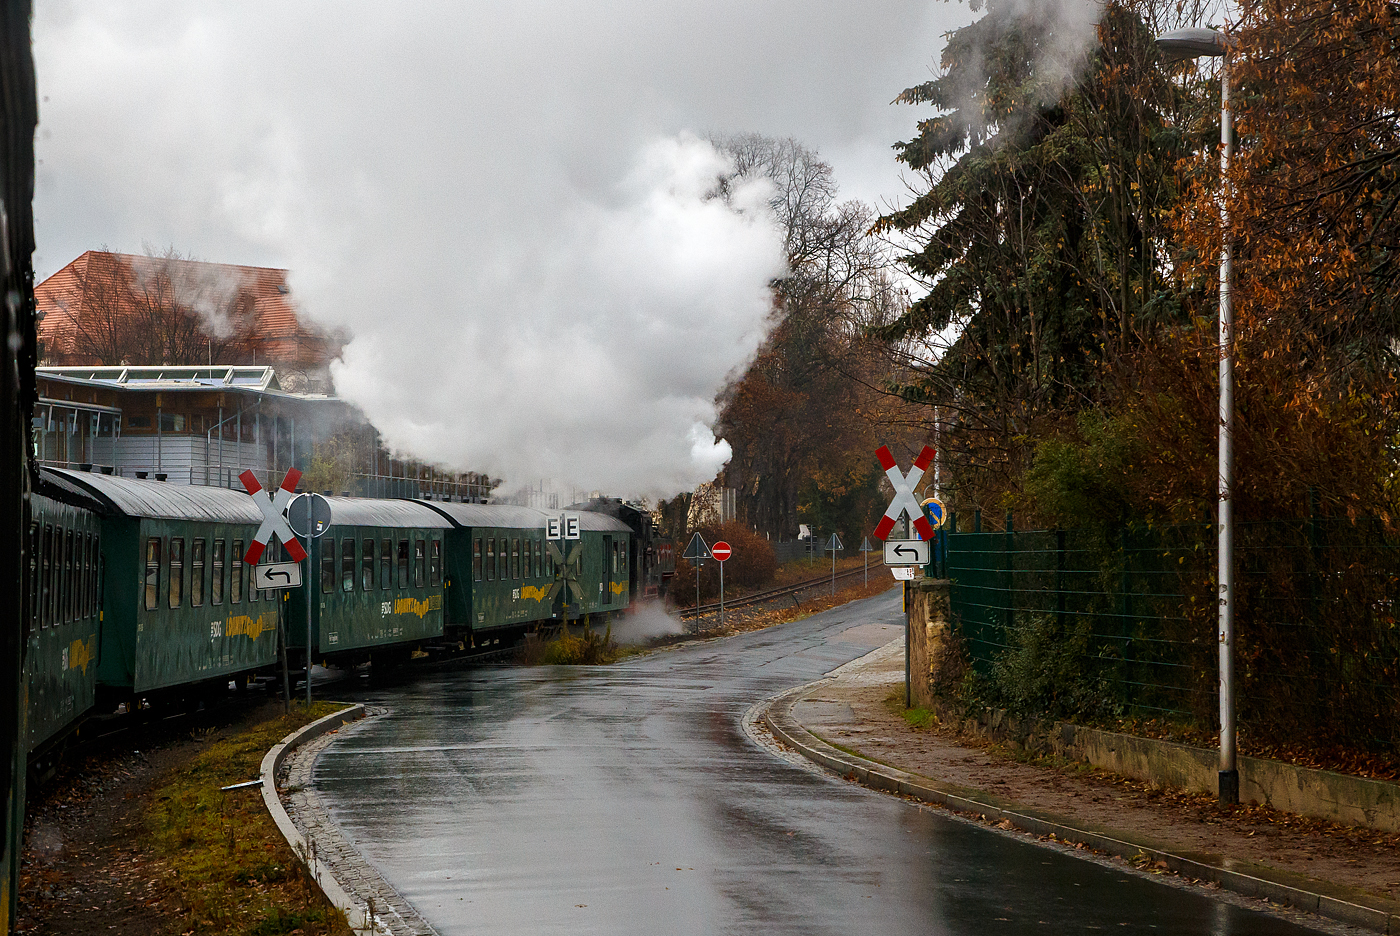 Unterwegs mit der Lnitzgrundbahn der SDG - Schsische Dampfeisenbahngesellschaft mbH unser Dampfzug, gezogen von der schsischen VII K (Altbau) 99 1761-8, befhrt hier am 07.12.2022 die Strecke in Radebeul bei der Pestalozzistrae / Steinbachstrae nahe der Meiner Strae.

Die Strecke der schsischen Schmalspurbahn Radebeul Ost - Moritzburg - Radeburg in der Spurweite von 750 mm (KBS 509, 12501) hat eine Lnge von 16,6 km. Betrieben wird die Bahn von der SDG - Schsische Dampfeisenbahngesellschaft mbH. Fr die Strecke wird heute auch die von der DB AG 1998 vergebene Marketingbezeichnung Lnitzgrundbahn verwendet. Umgangssprachlich wird sie dagegen meist als Lnitzdackel (kurz auch Dackel) oder frher Grundwurm bezeichnet.
